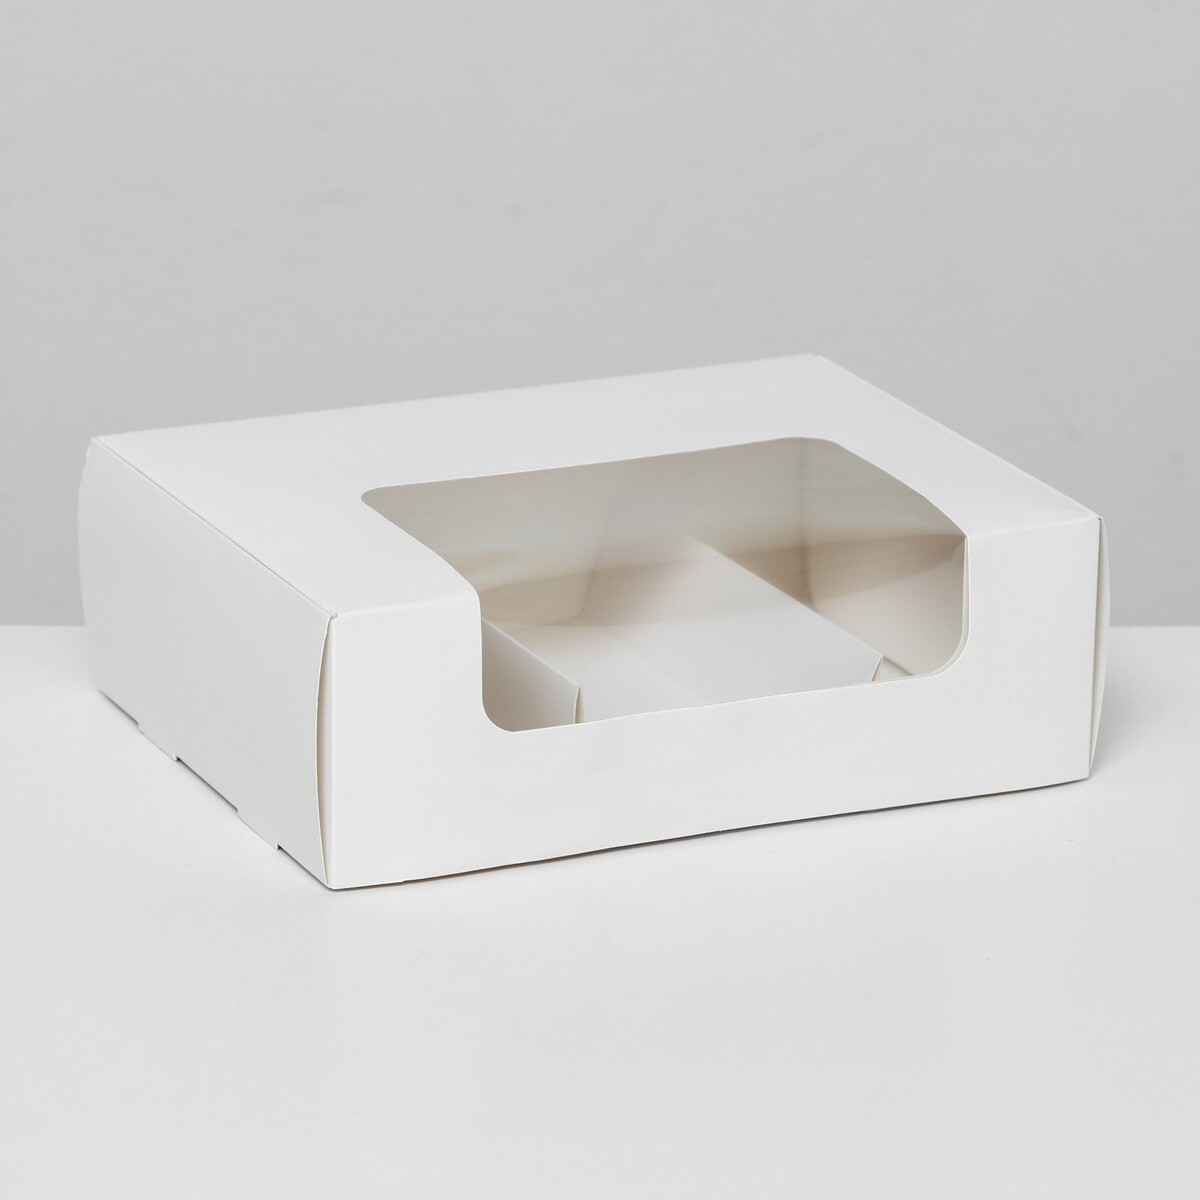 Коробка складная, под 3 эклера, белая, 20 x 15 x 6 см подставка для планшета регулируемая складная резиновые вставки белая